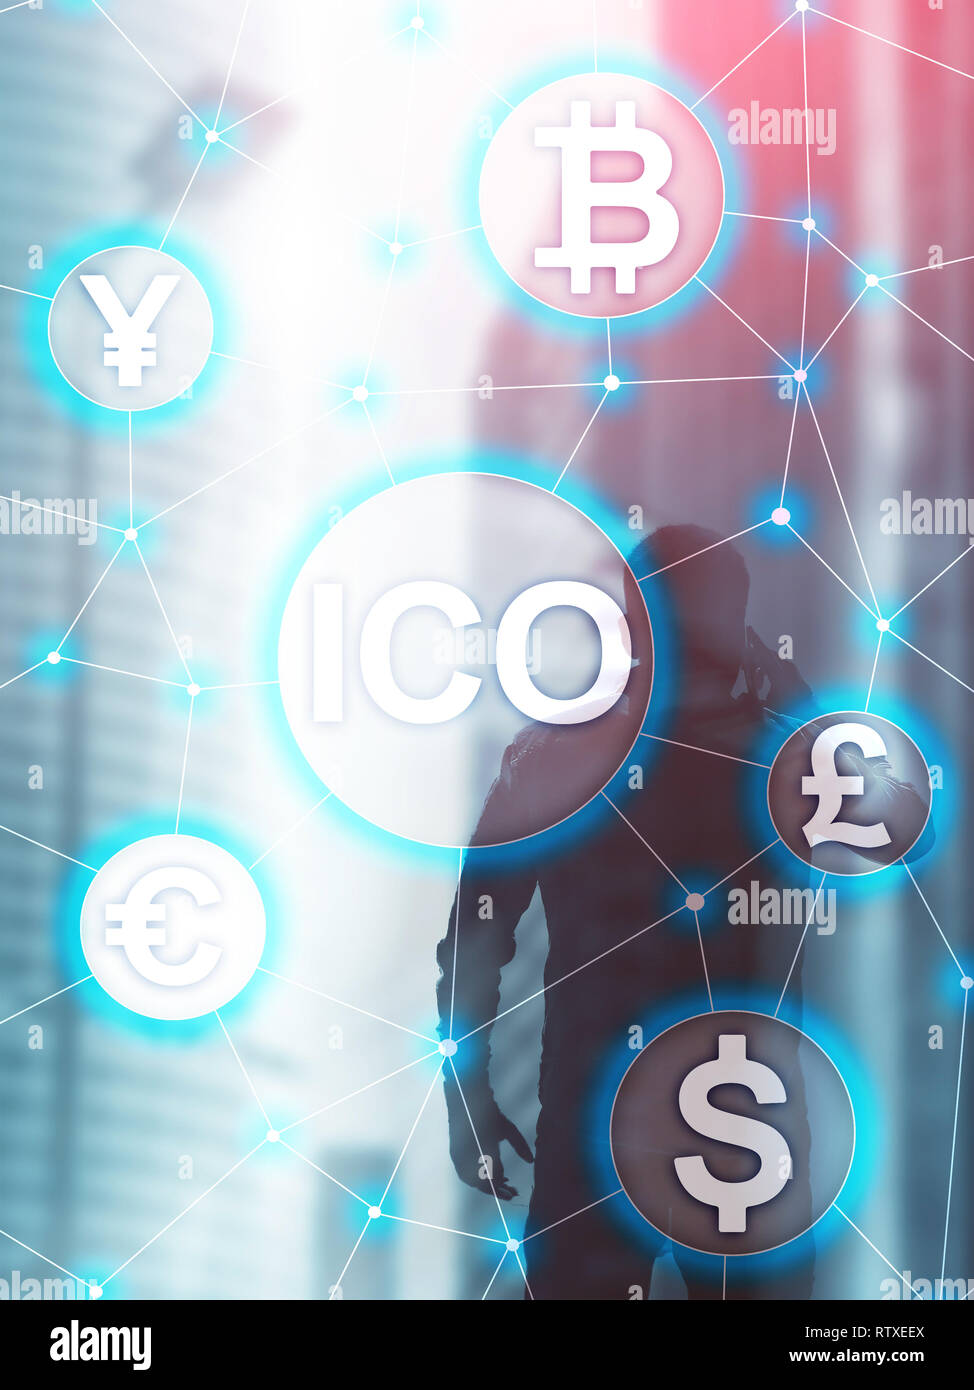 ICO - die erste Münze, und Blockchain cryptocurrency Konzept auf unscharfen Geschäft Gebäude Hintergrund. Abstrakte Cover Design vertikalen Format. Stockfoto